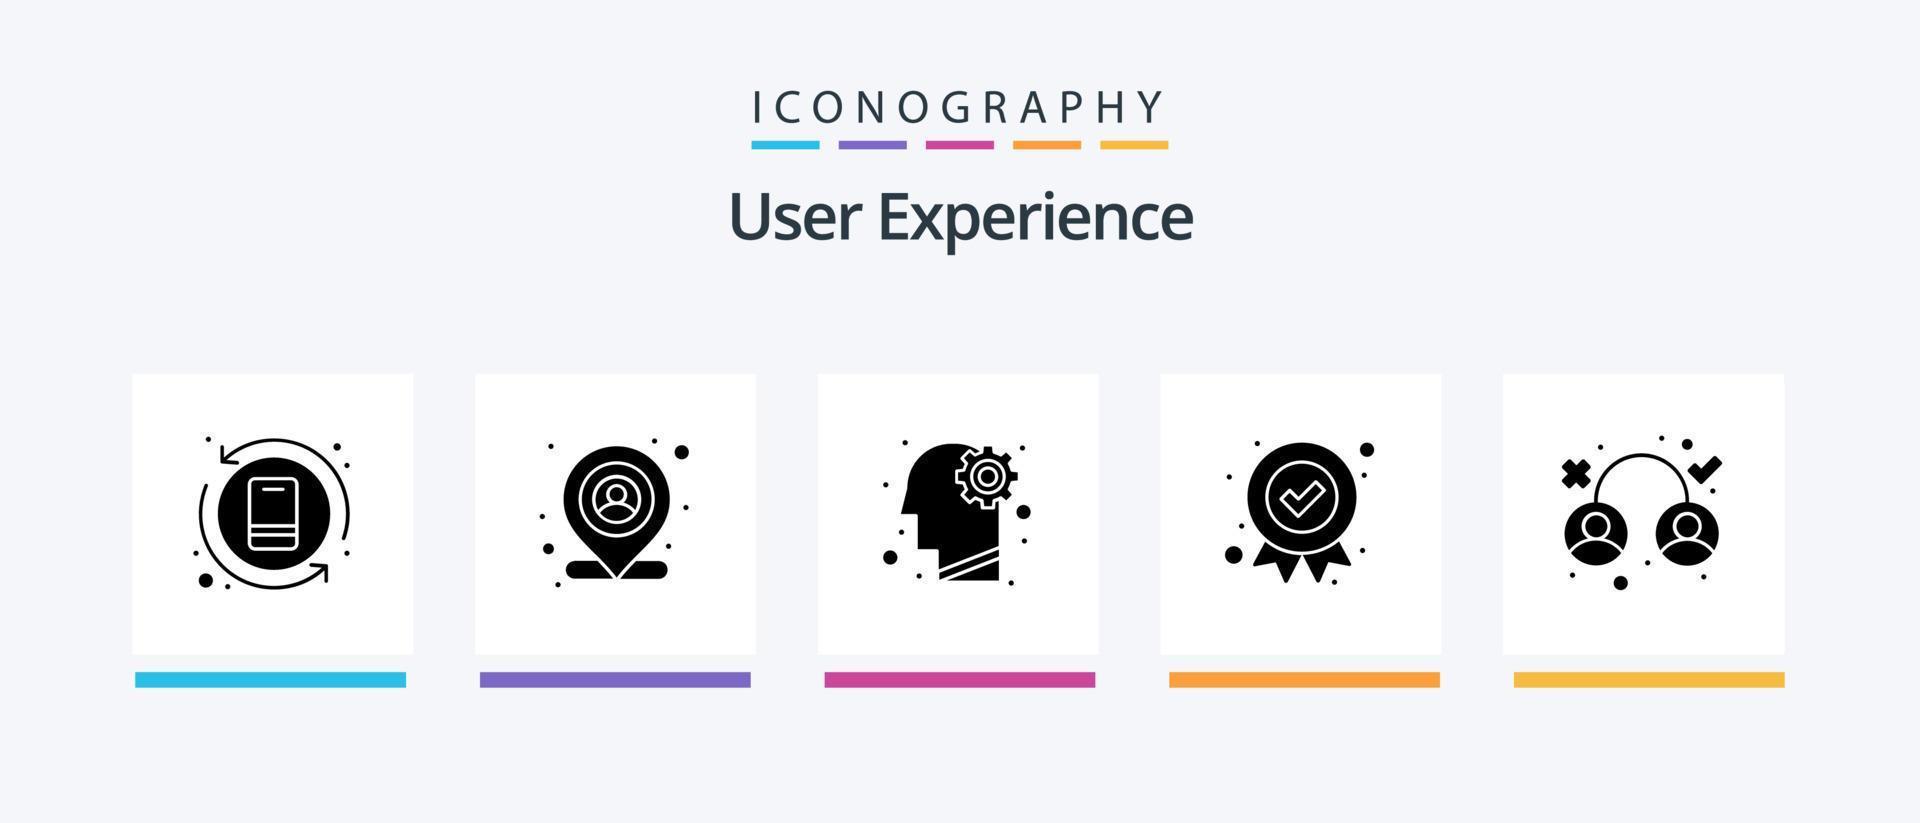 User Experience Glyph 5 Icon Pack inklusive Erfahrung. Medaille. Gehirn. Qualität. vergeben. kreatives Symboldesign vektor